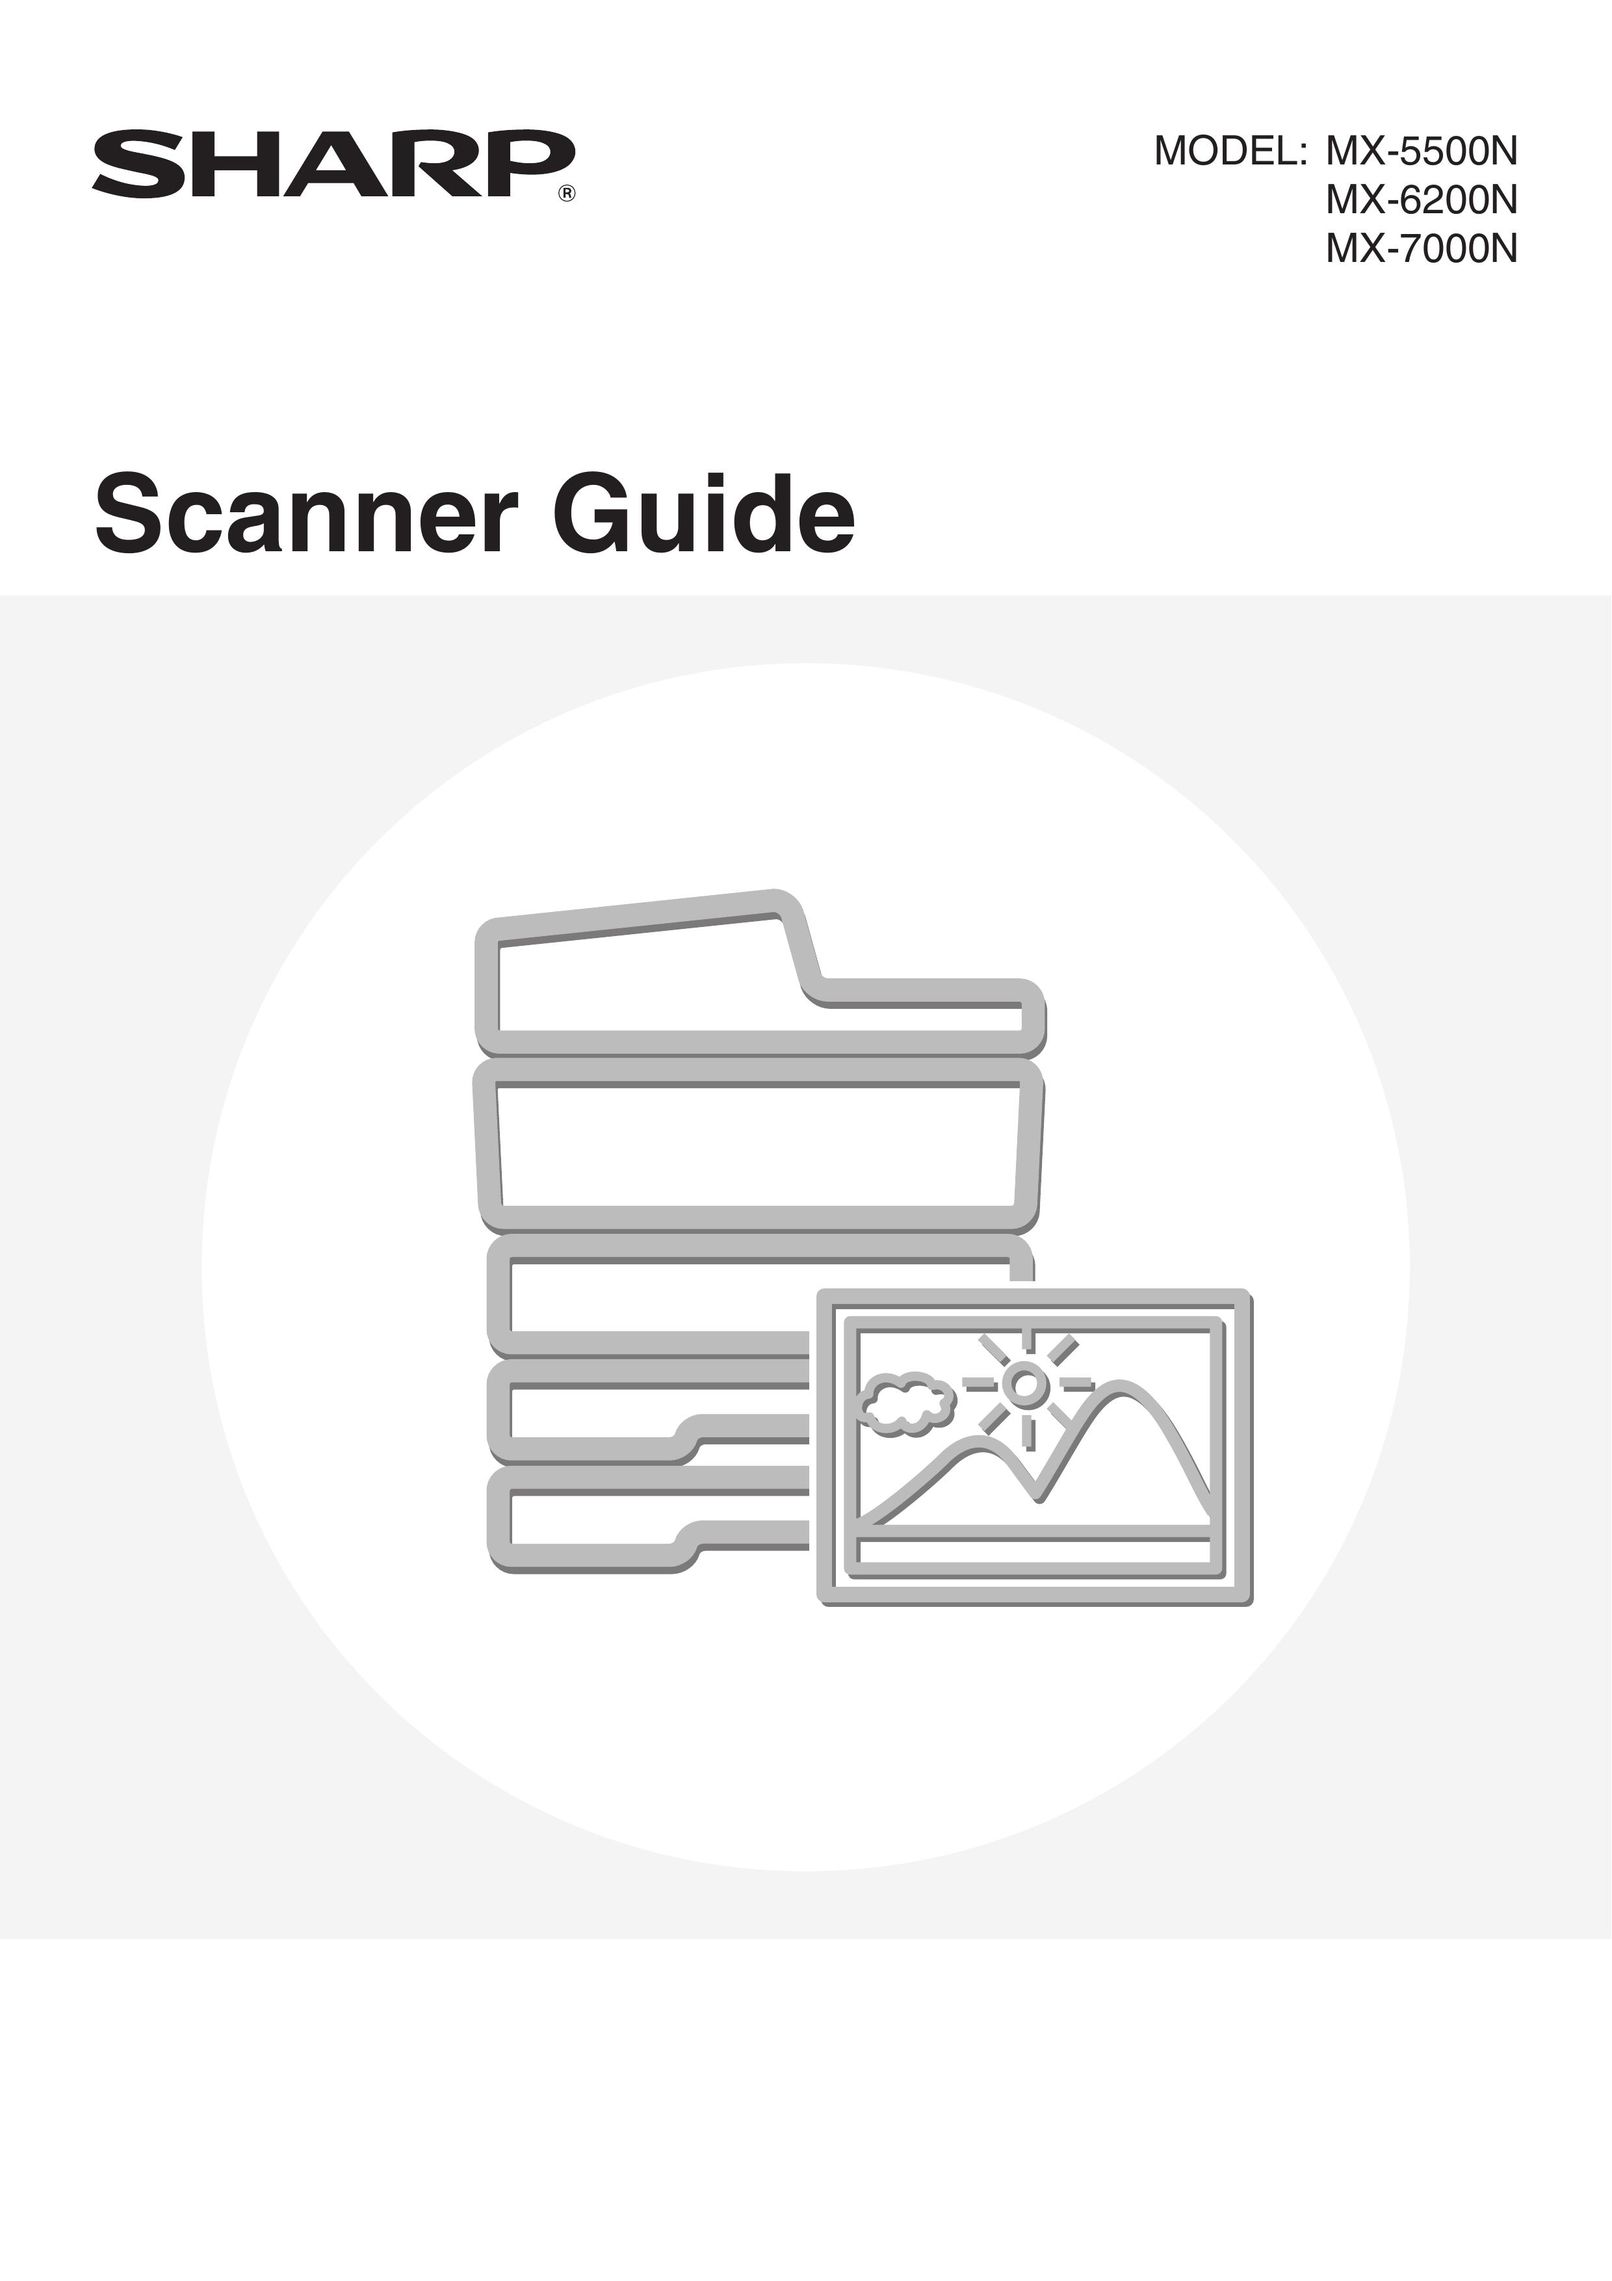 Sharp MX-7000N Scanner User Manual